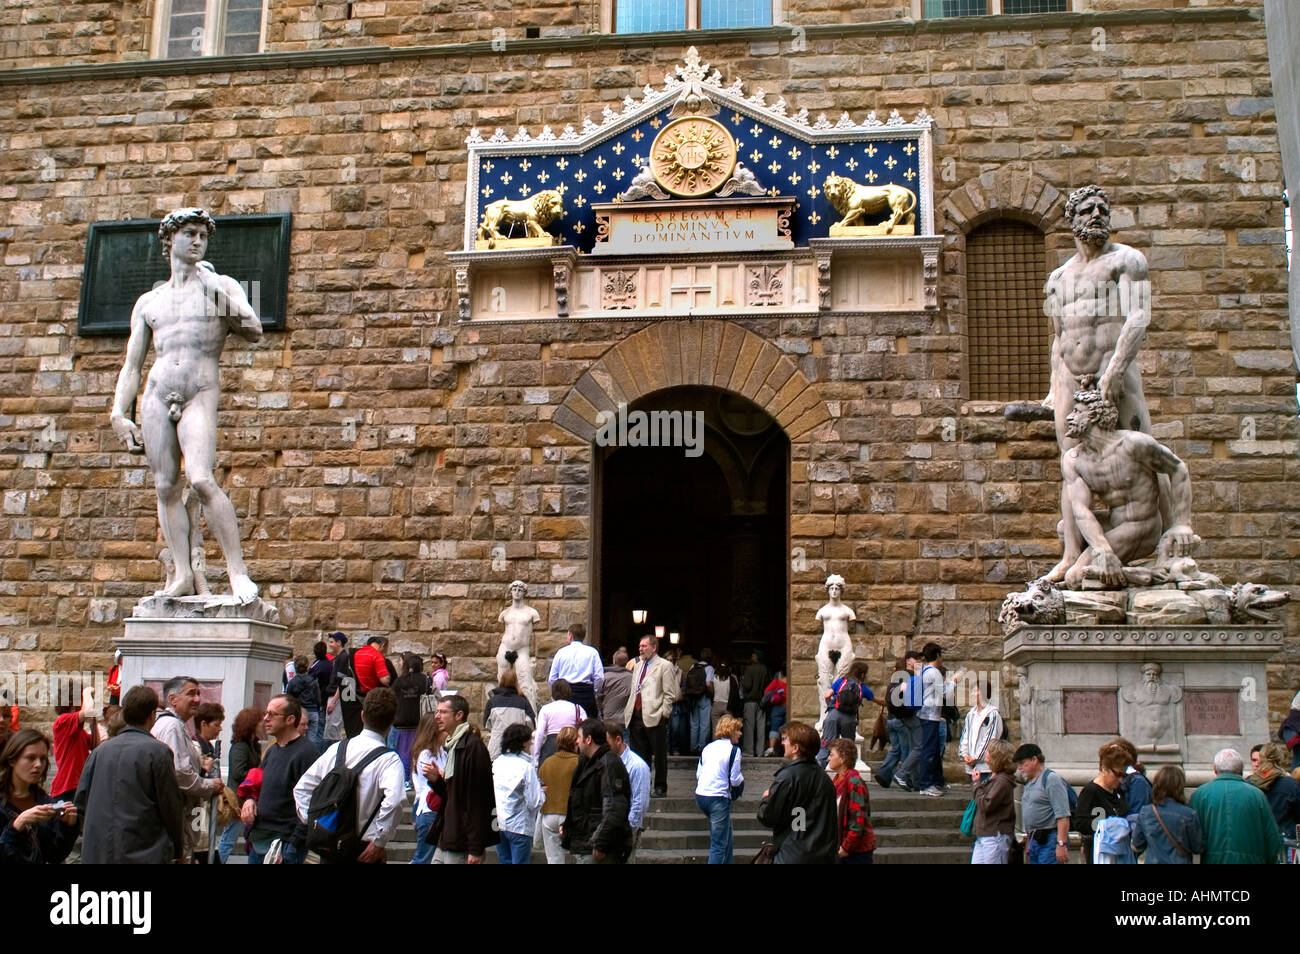 David Michelangelo Buonarroti le palais Palazzo Vecchio est l'hôtel de ville de Florence Italie de Medici Banque D'Images